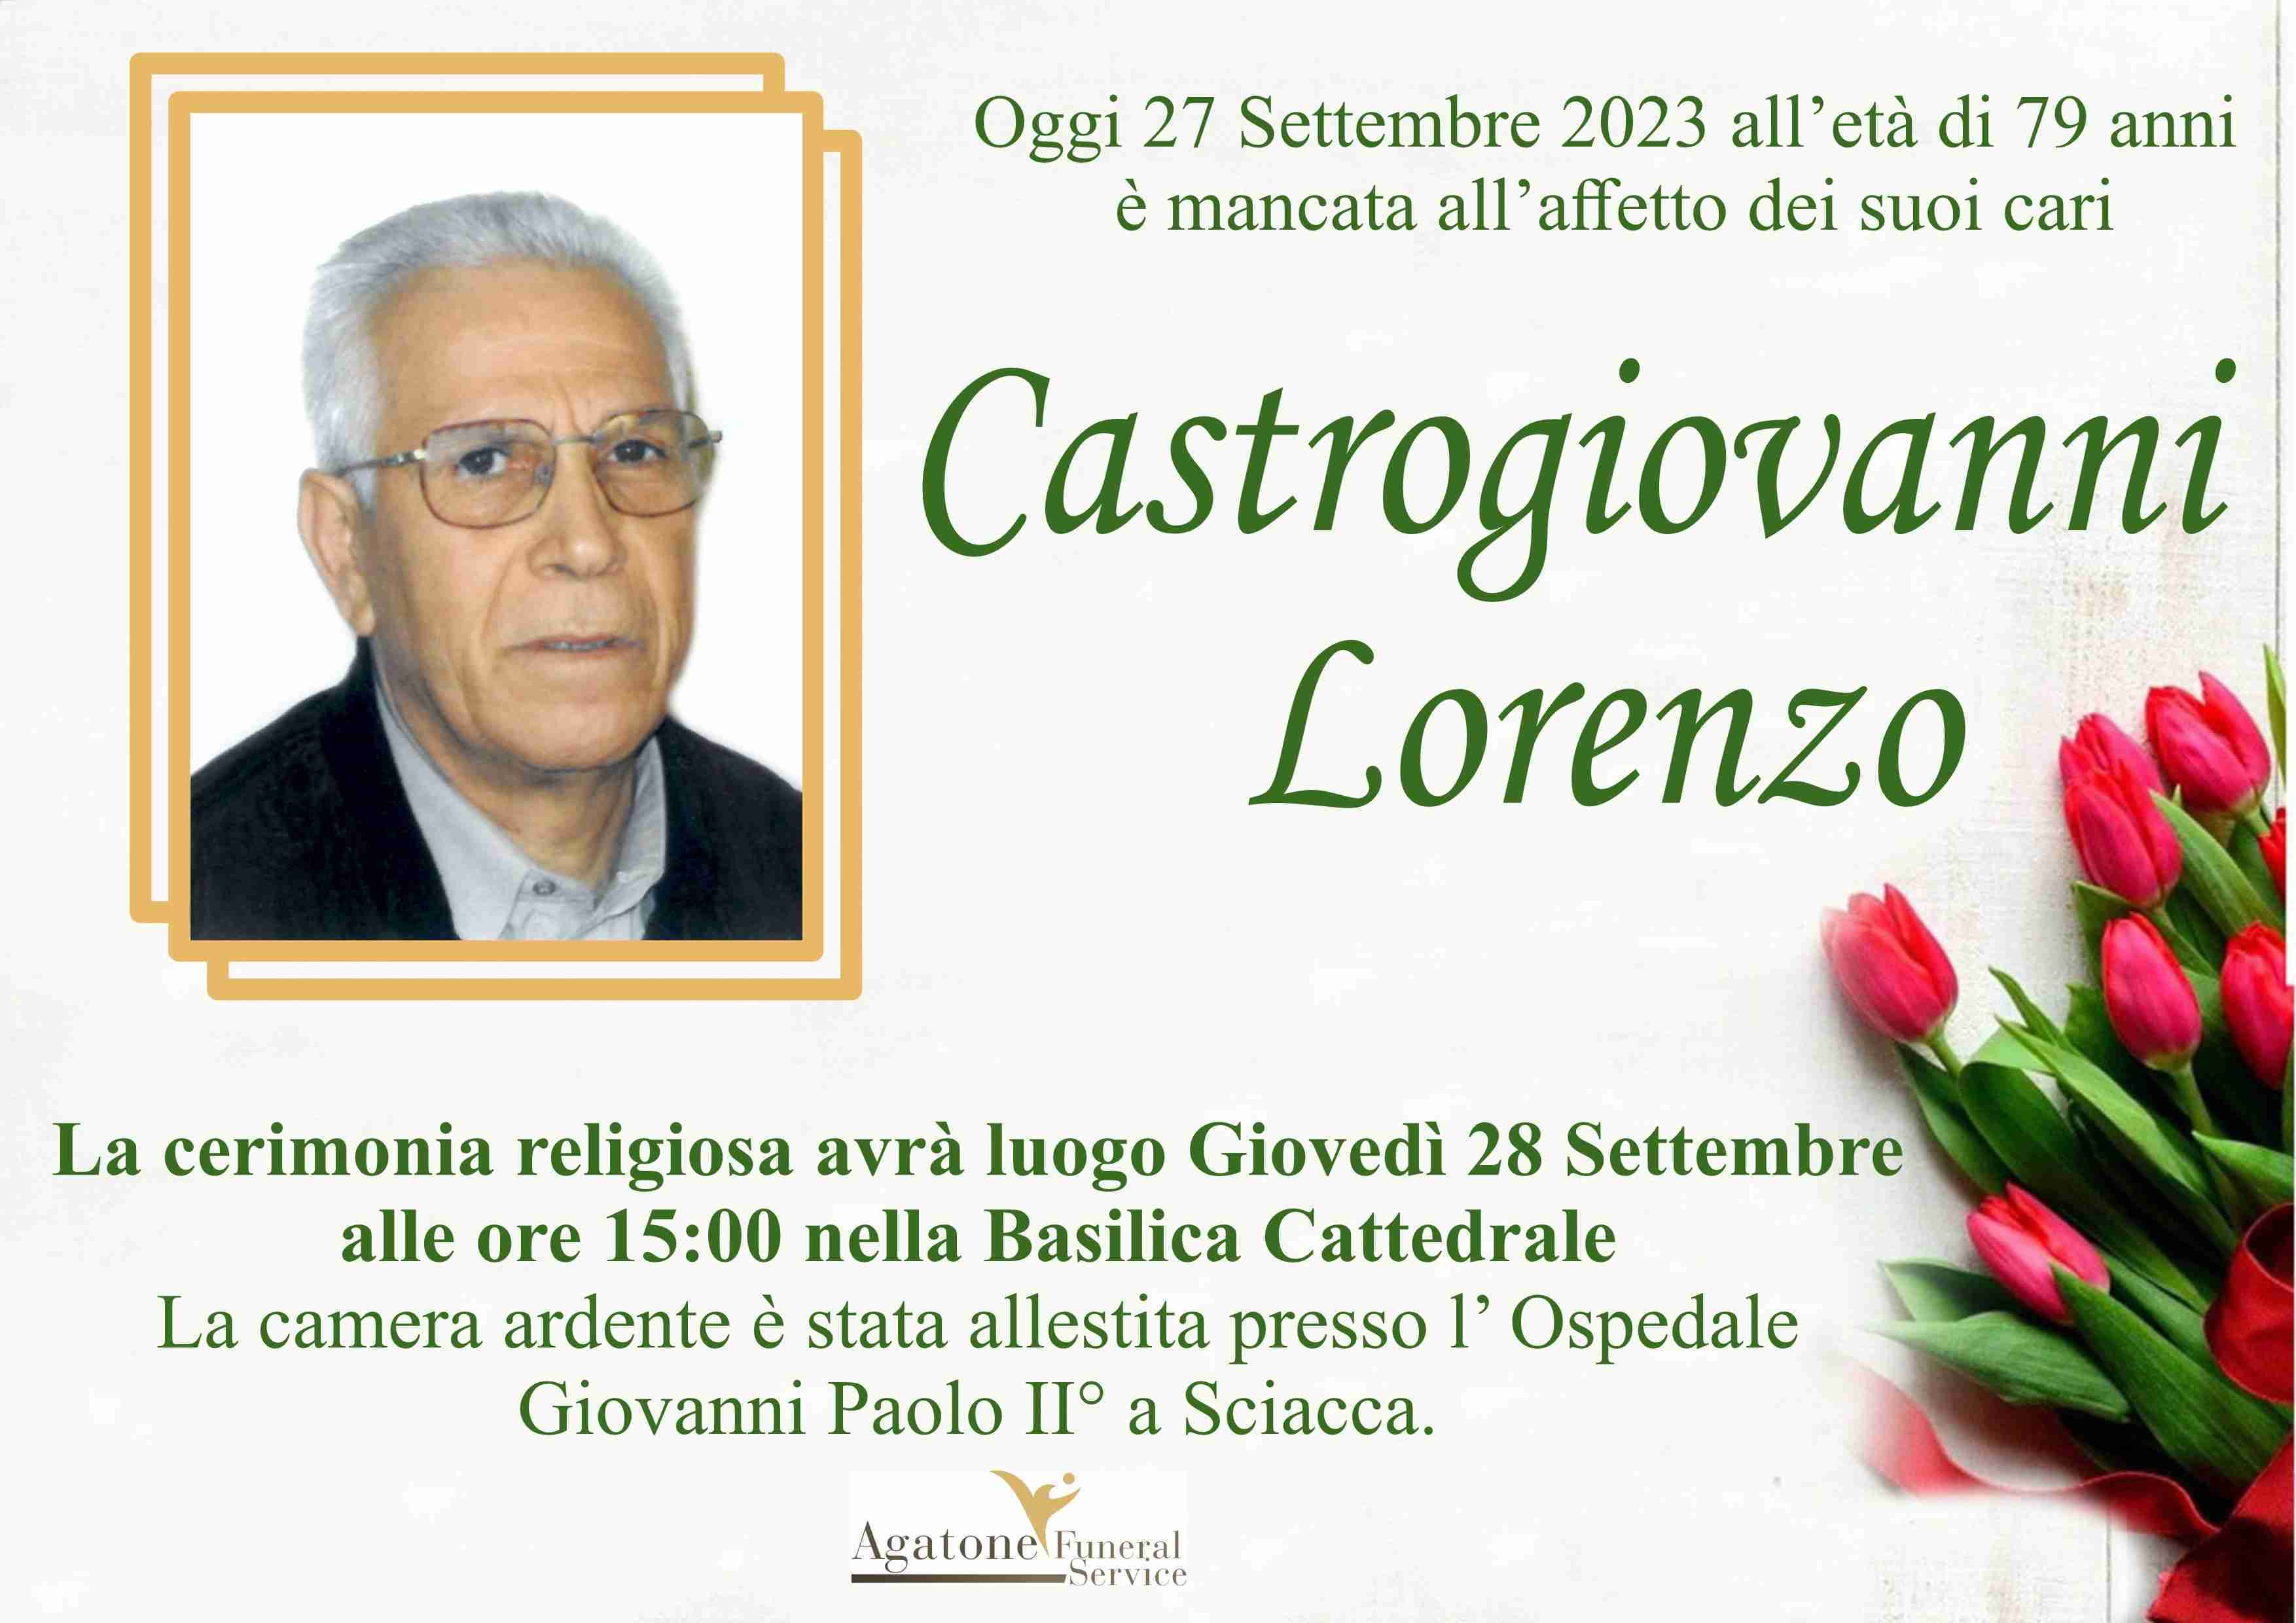 Lorenzo Castrogiovanni